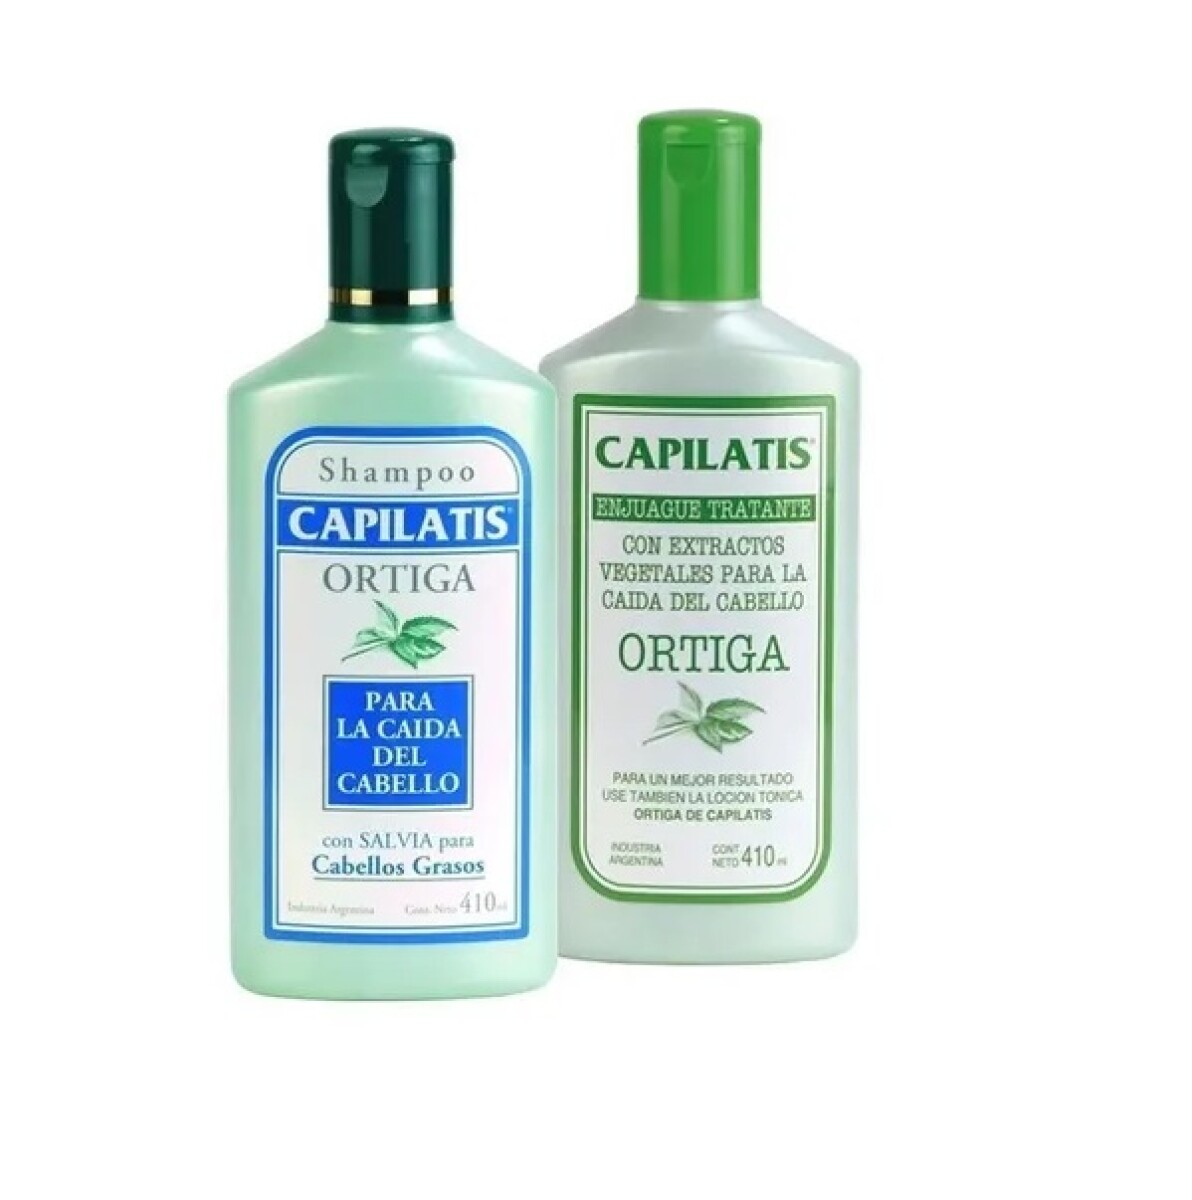 Shampoo Capilatis Ortiga Cabellos Grasos 410ml+aco. 410ml 